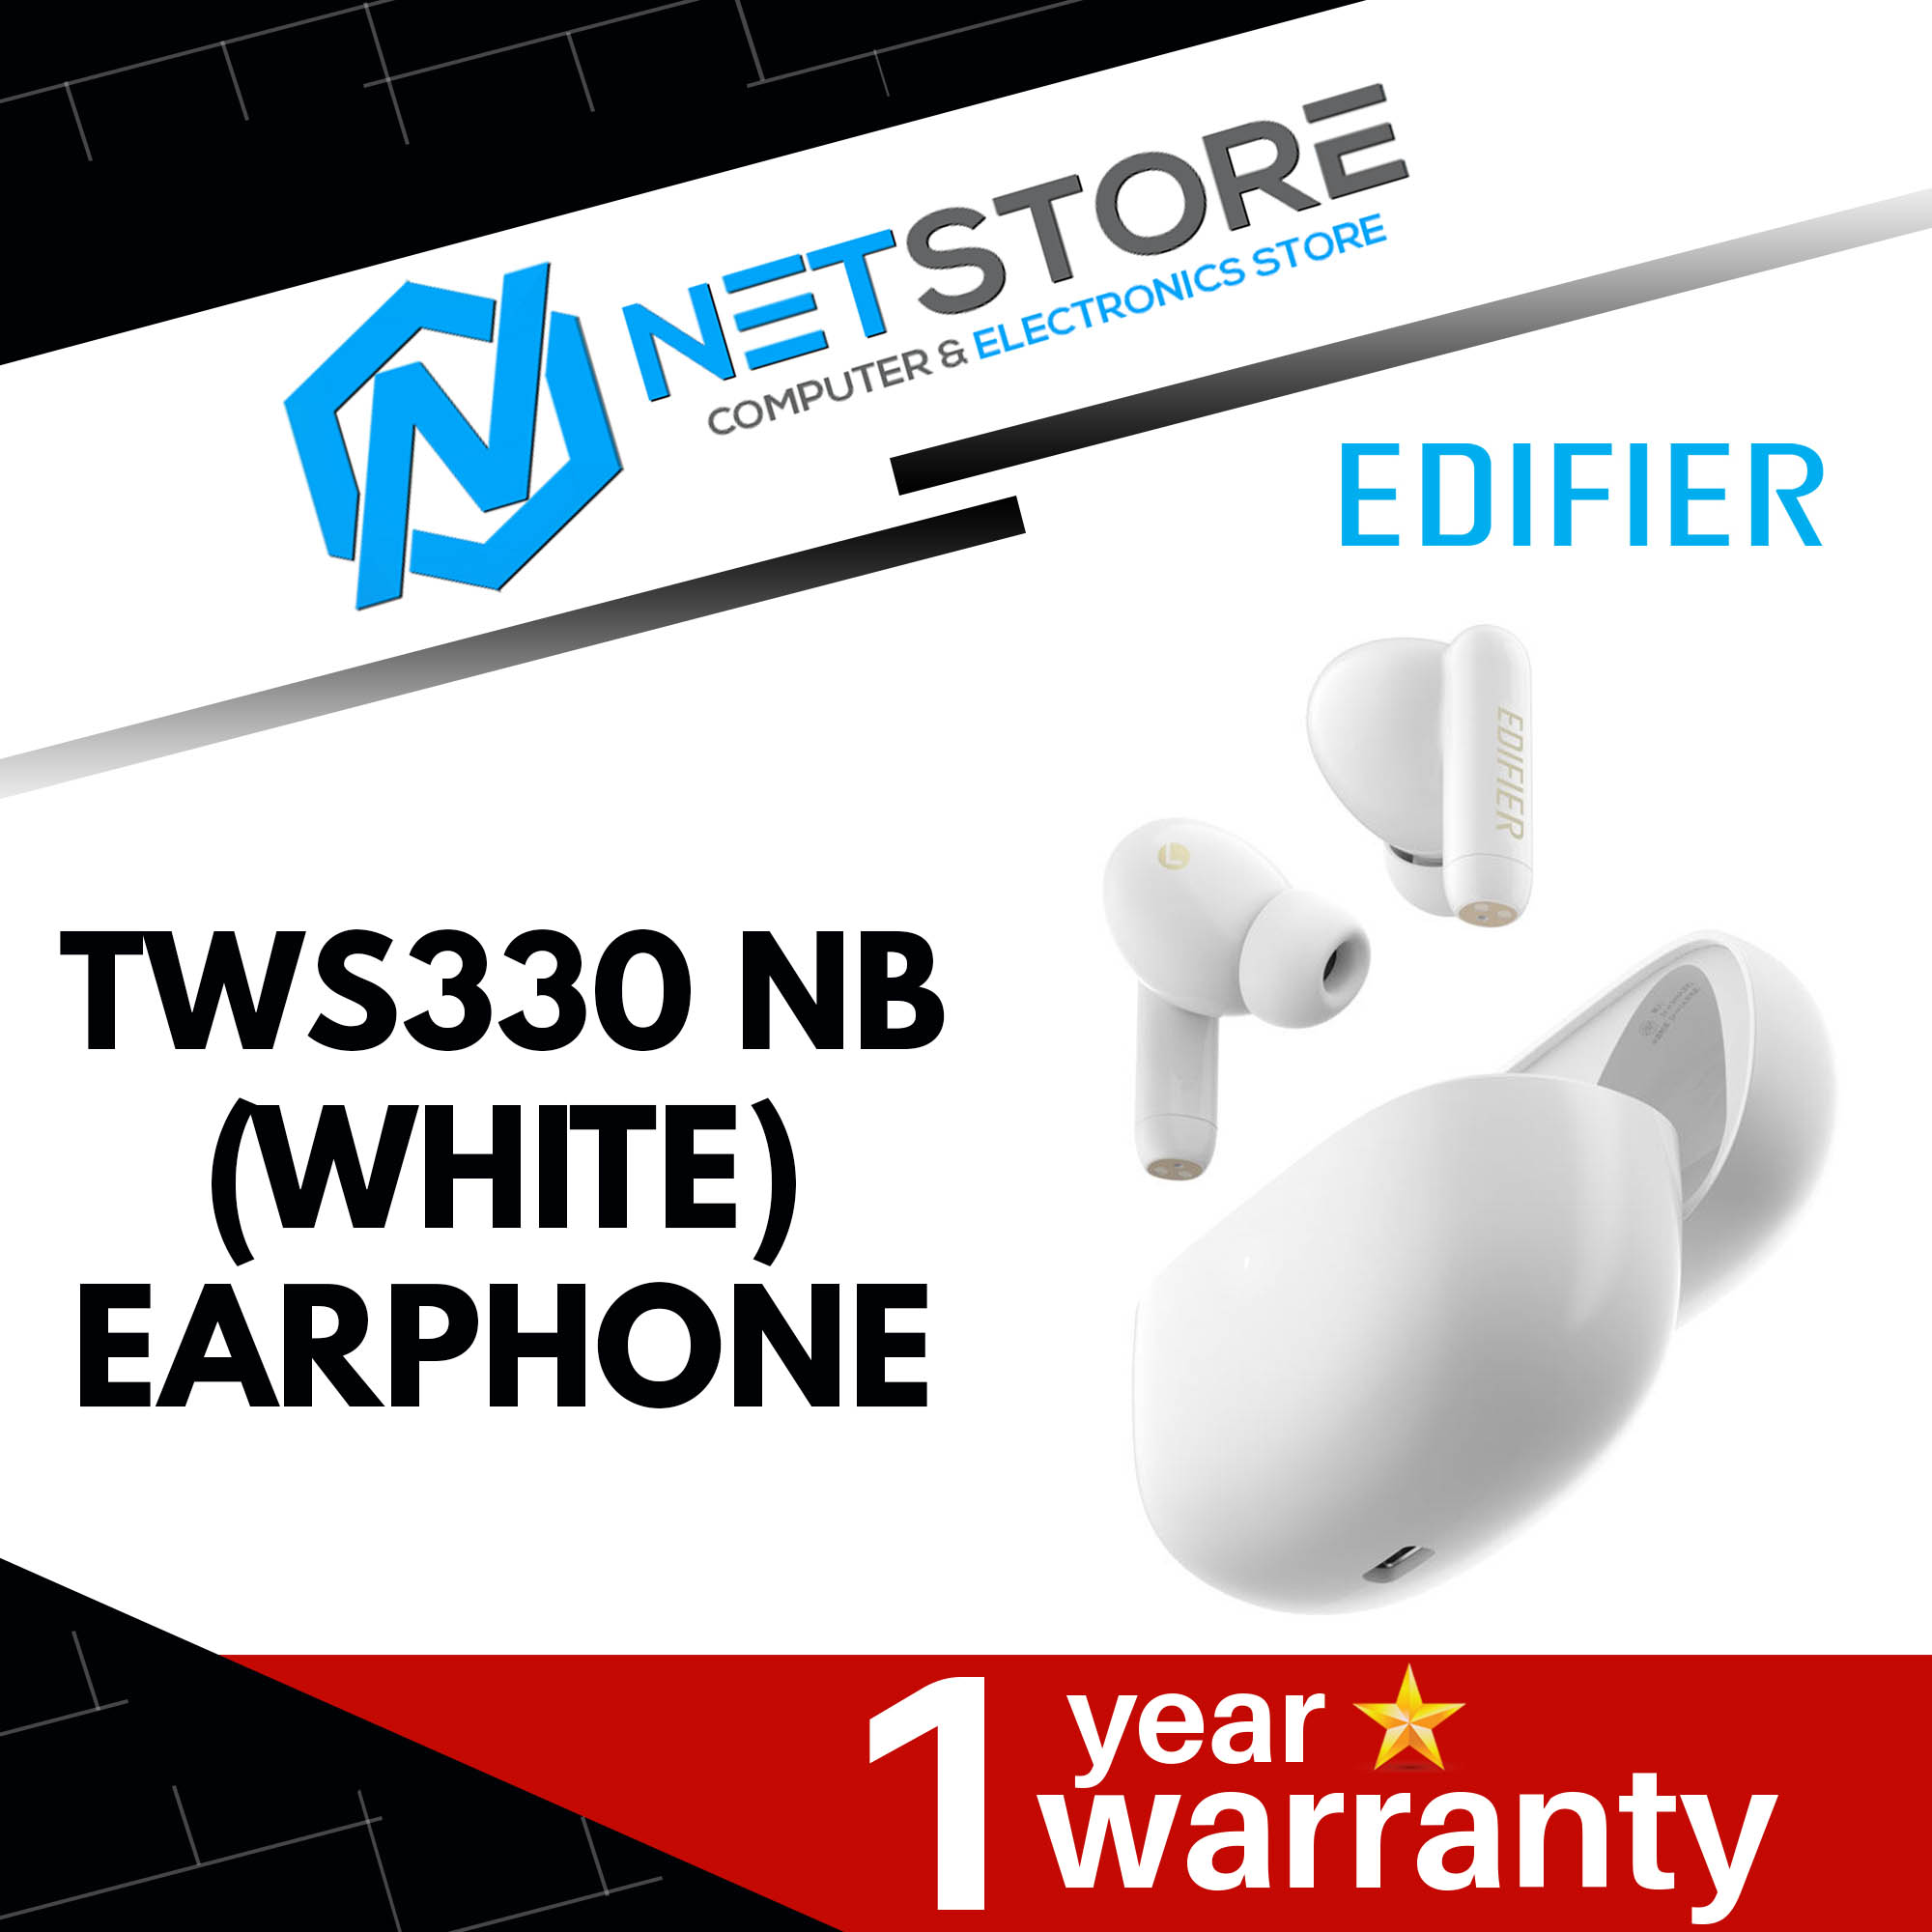 EDIFIER TWS330 NB (WHITE) EARPHONE - HP-TWS330 NB (W)